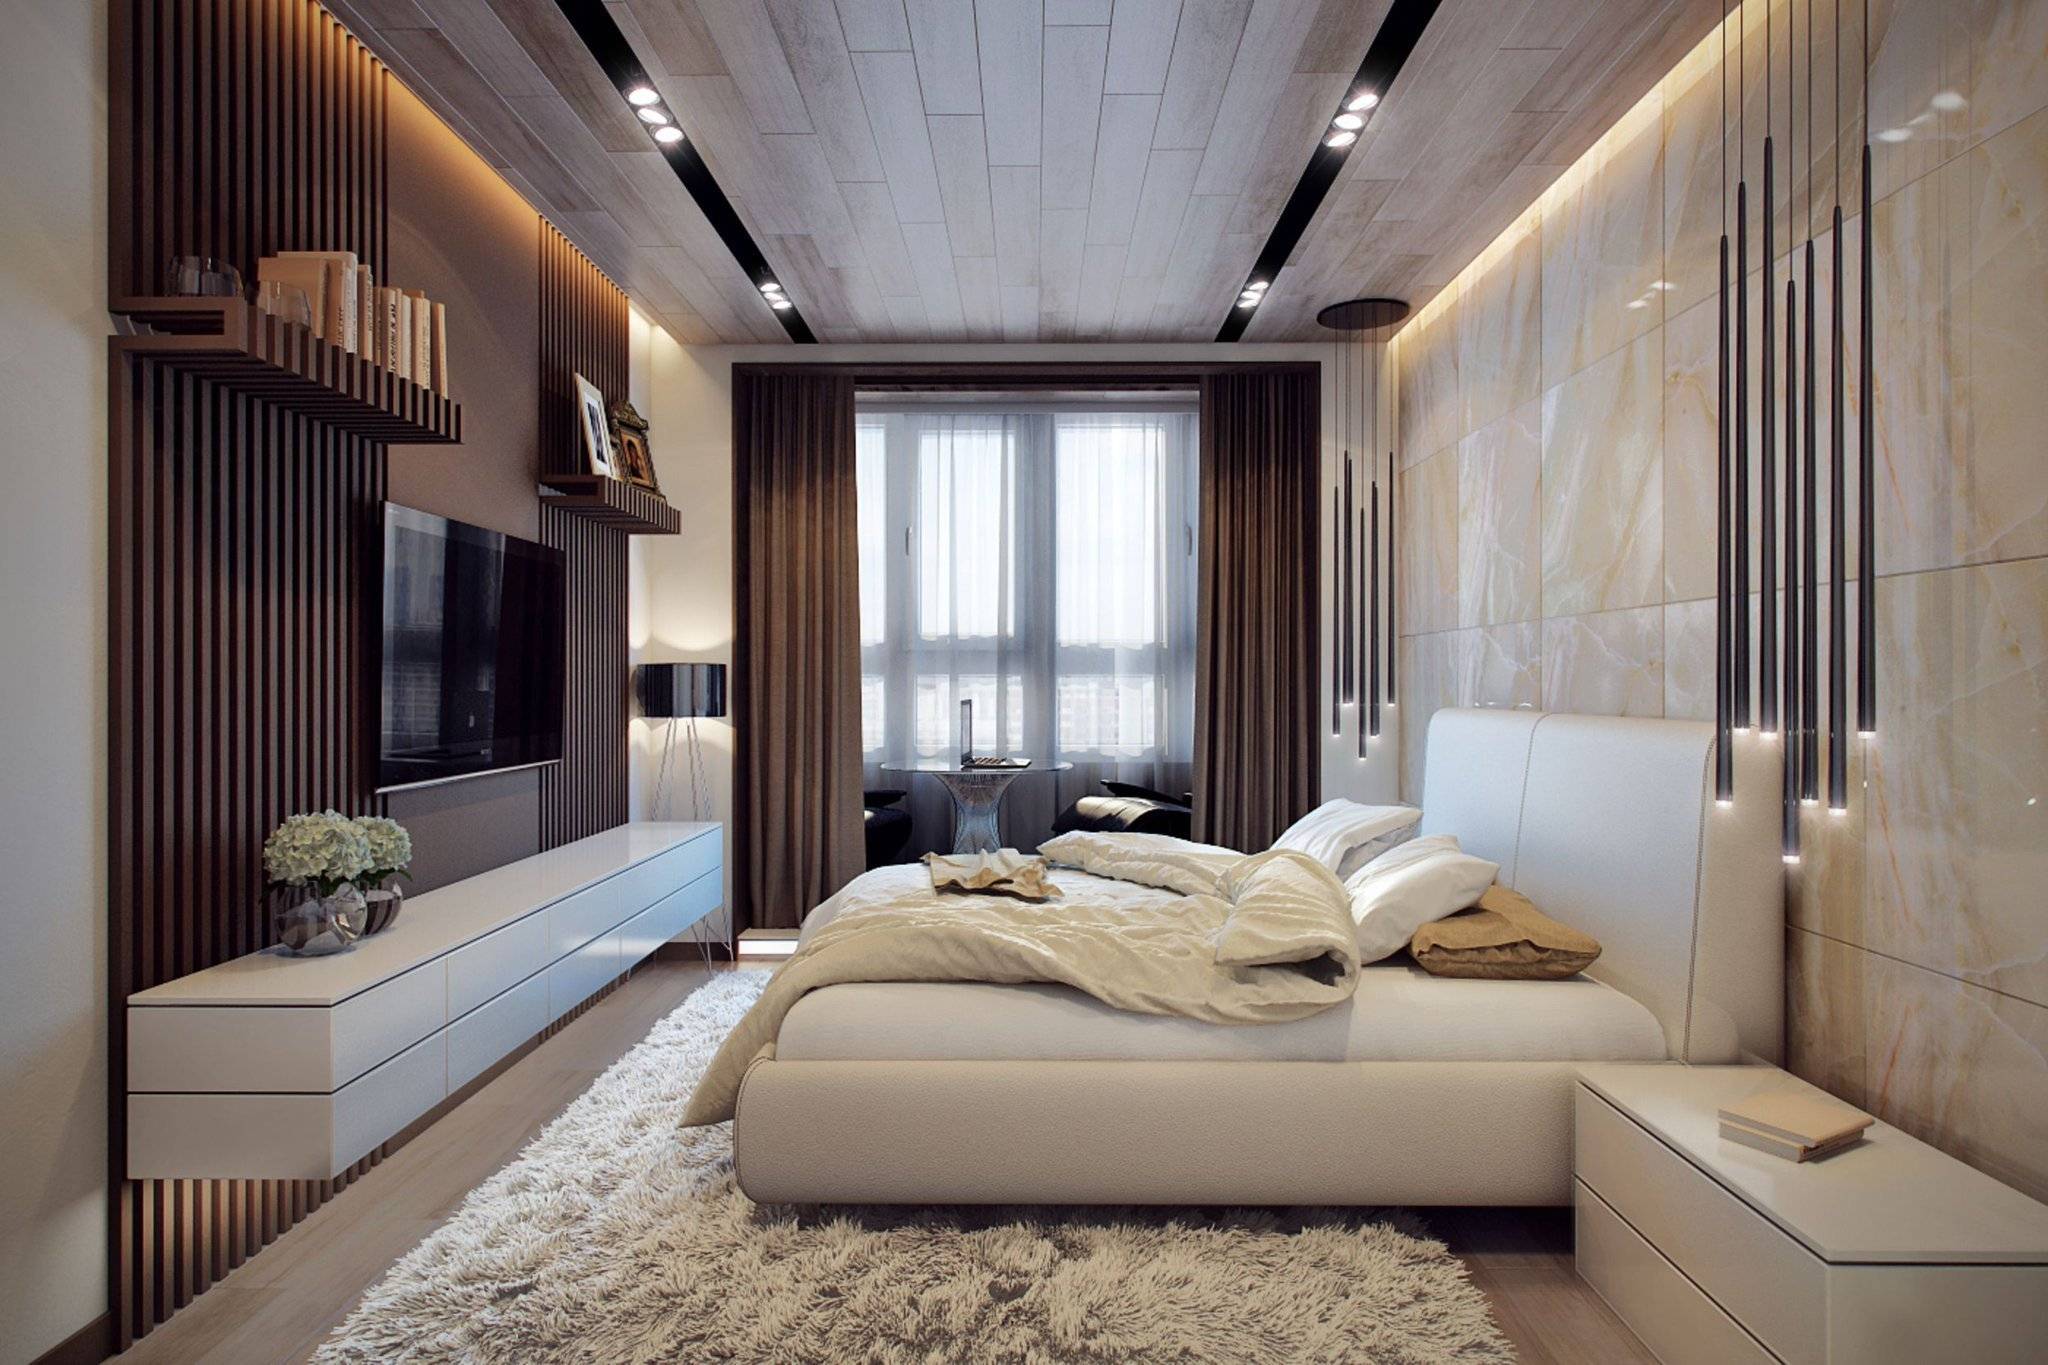 Современный интерьер – дизайн в современном стиле квартиры и дома, идеи + фото